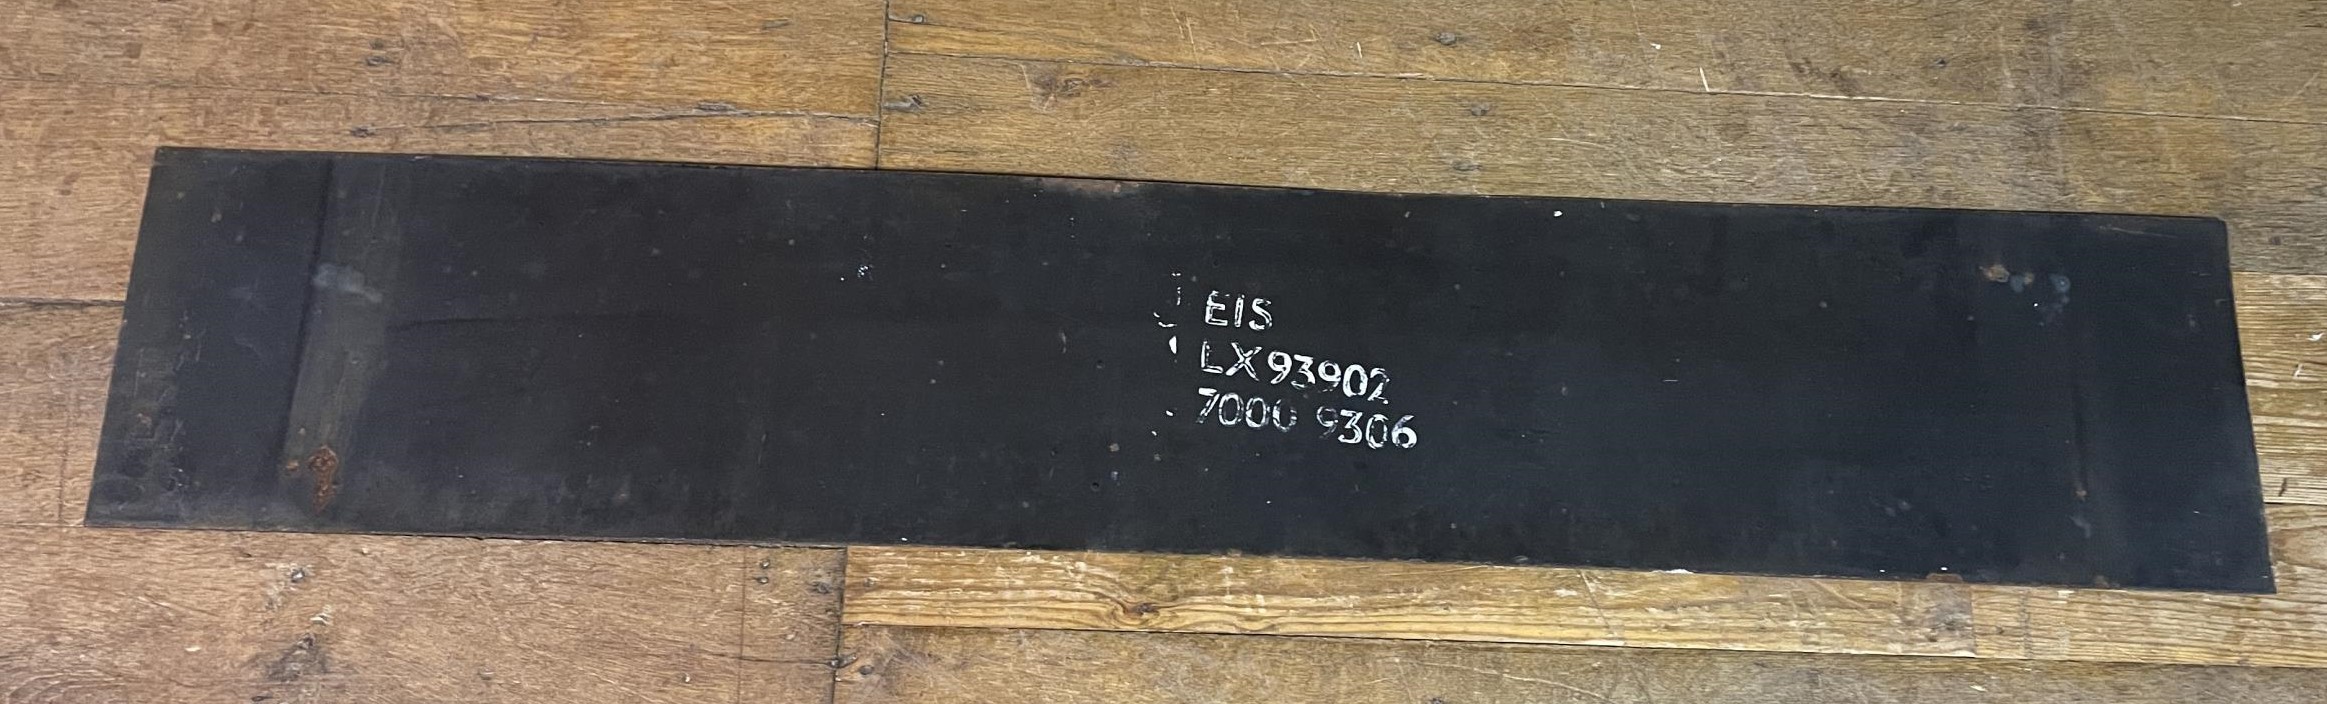 A London Underground enamel sign, Hainault, 27 x 149 cm - Image 6 of 7